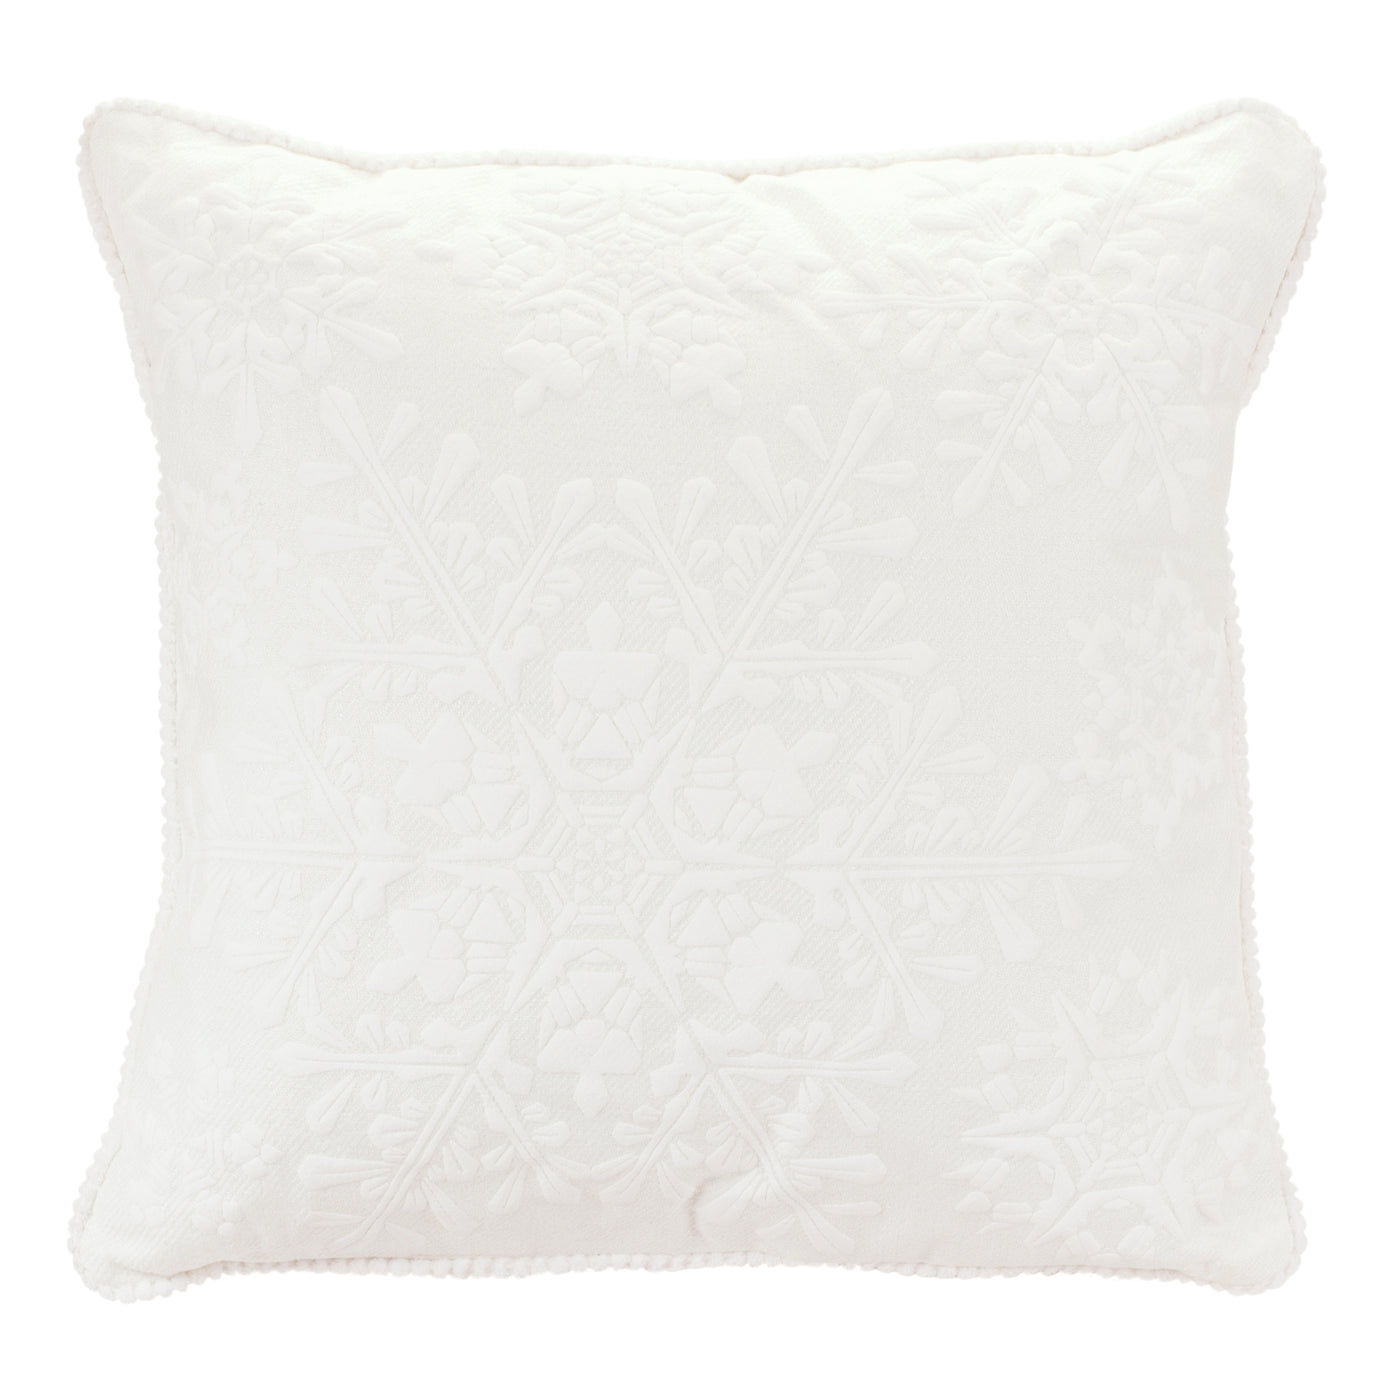 White Snowflake Pillow